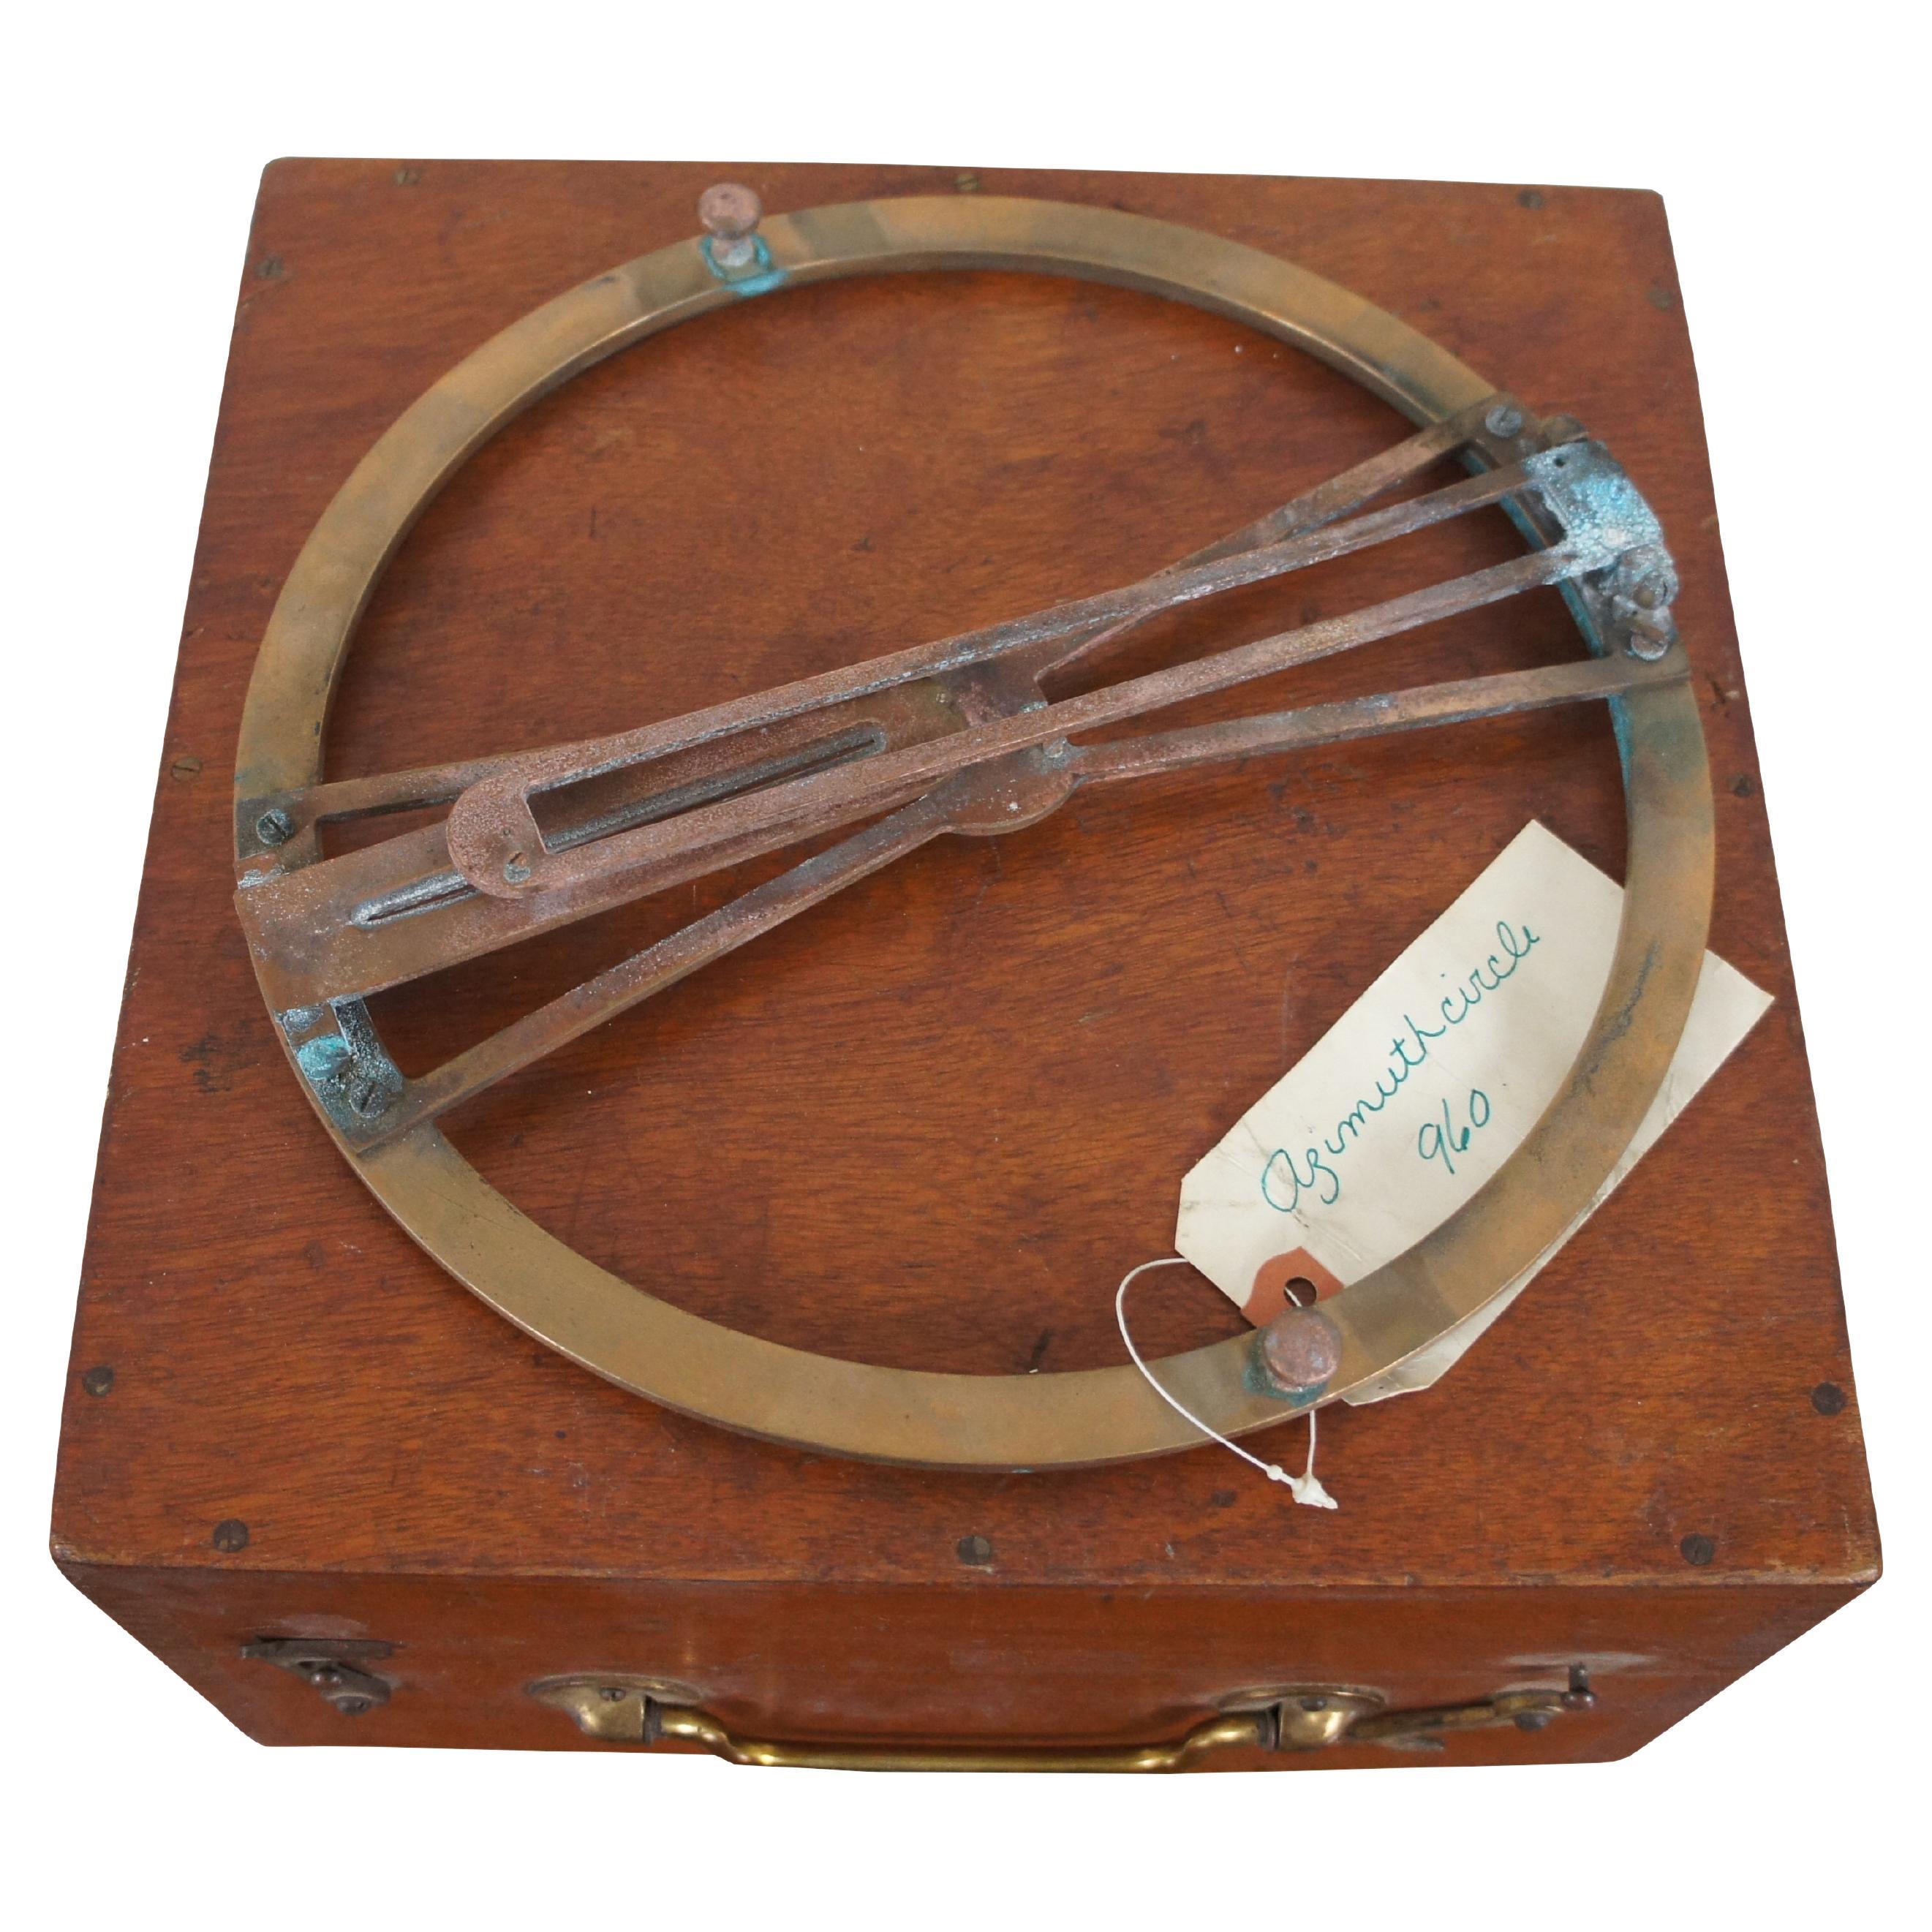 WWII Era Thomson System Azimuth Instrument und hölzerne Lagerung / Tragekoffer.

Ein Azimutalkreis ist ein Navigationsinstrument in Form eines Messingrings mit Visiereinrichtung, das an der Spitze eines Kompasses befestigt wird und dem Benutzer eine